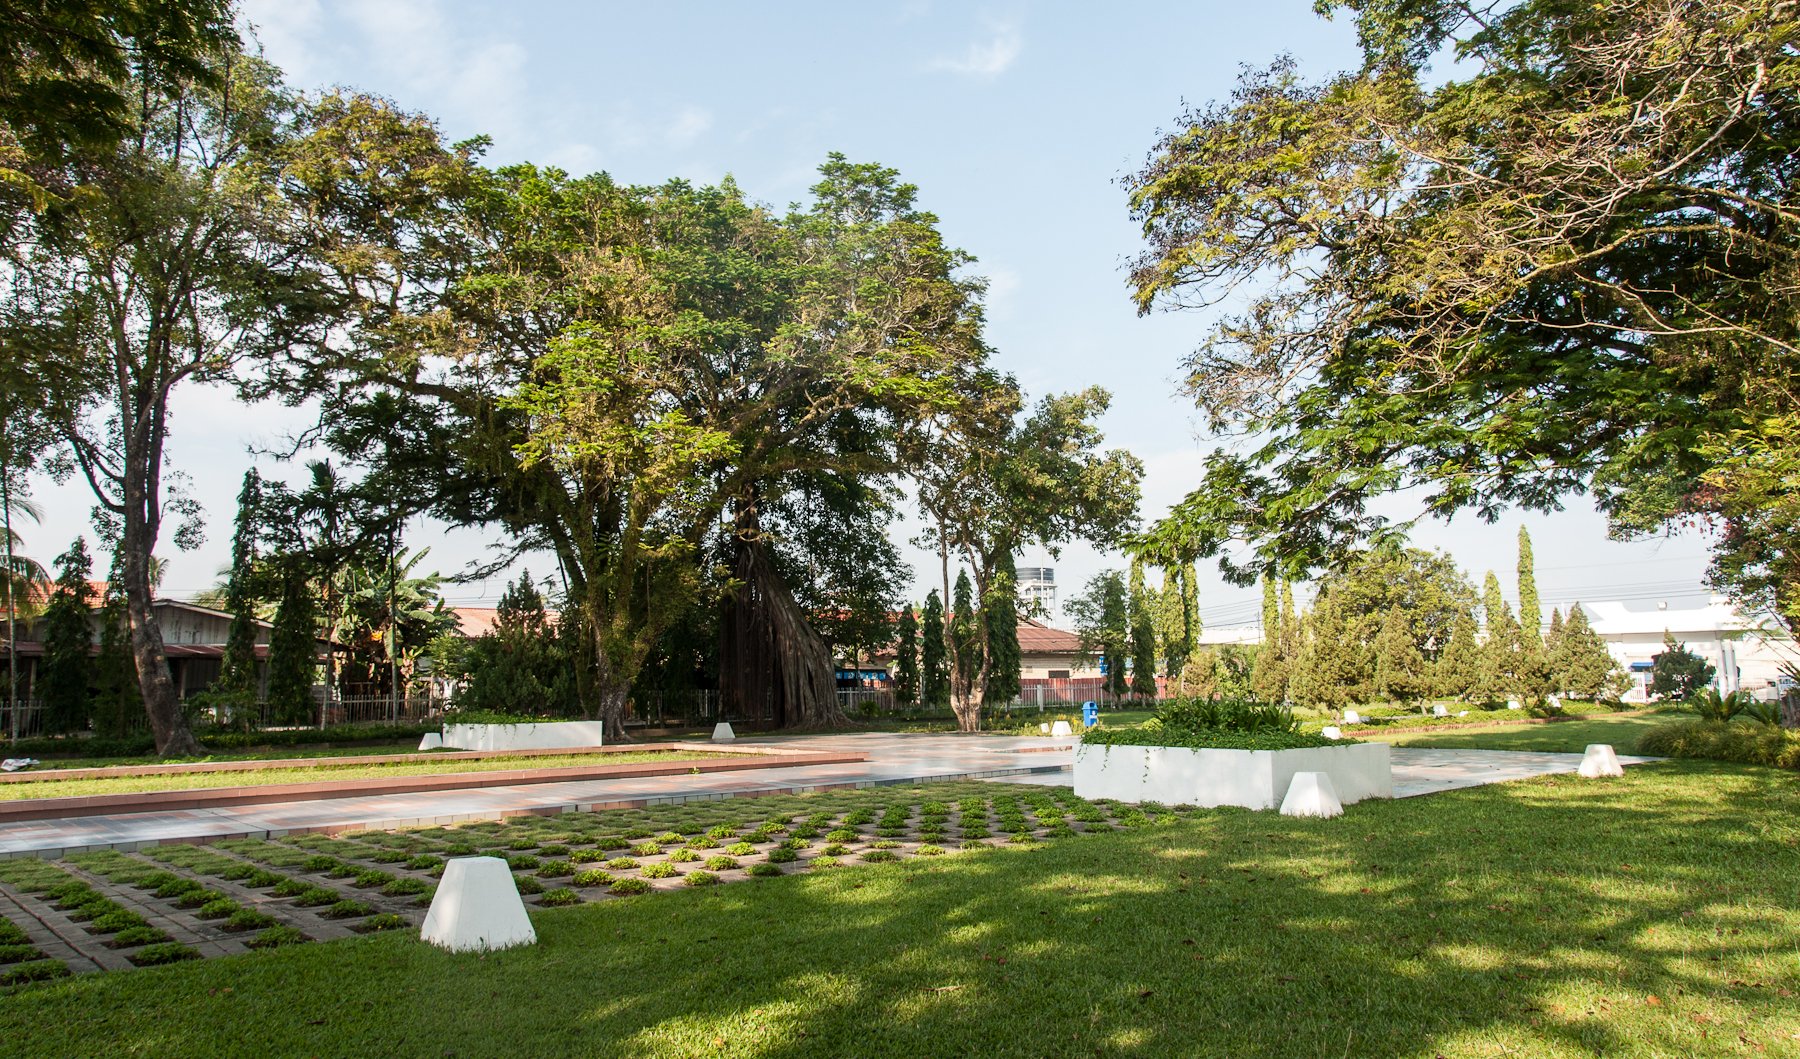 Petagas Memorial Garden